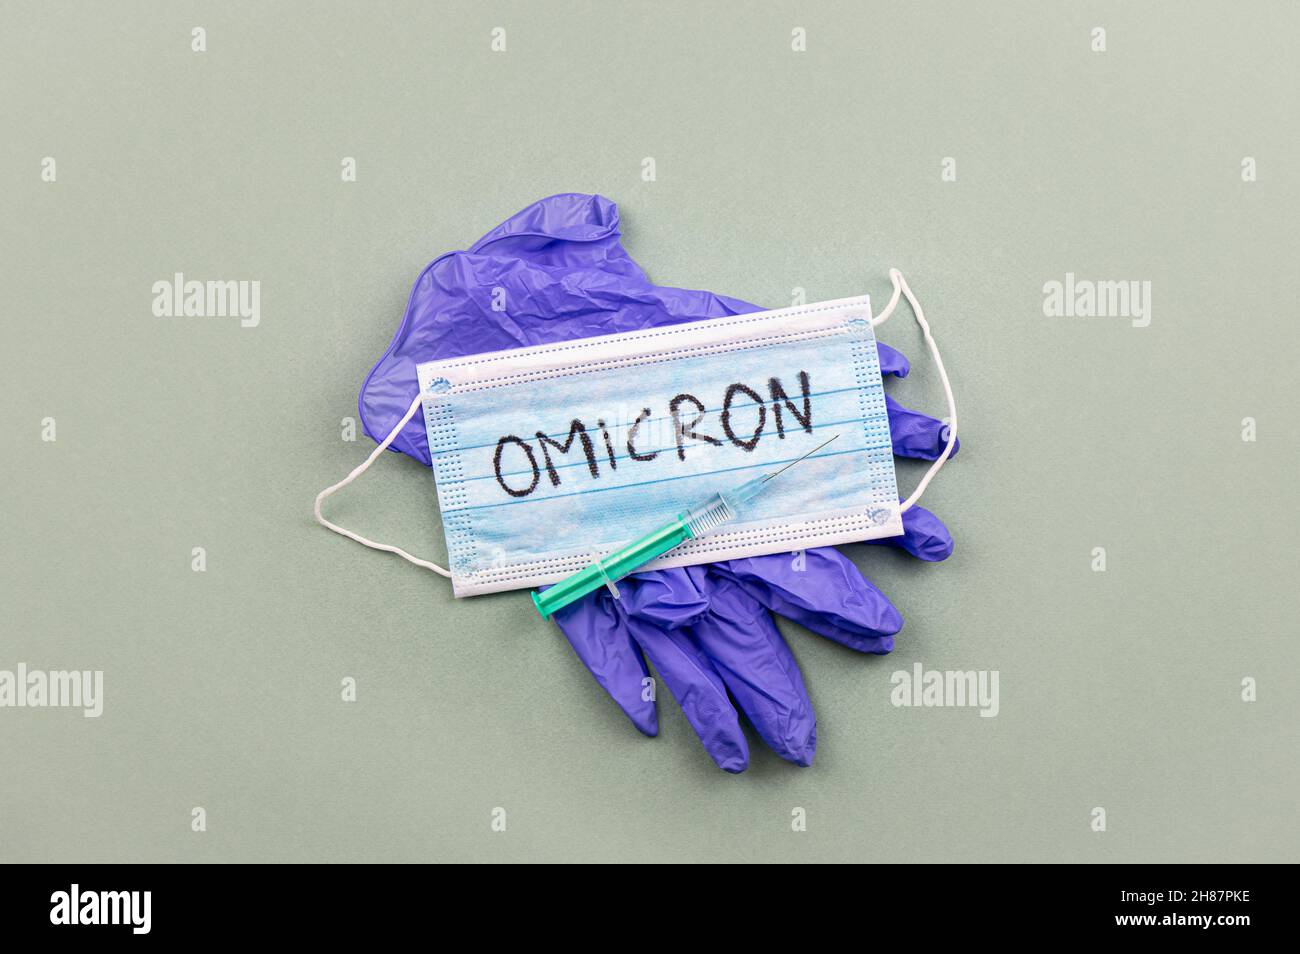 Neues Coronavirus Covid-19 Mutation Omicron Konzept. Medizinische Maske, Spritze und Text mit den Buchstaben Omicron. Stockfoto